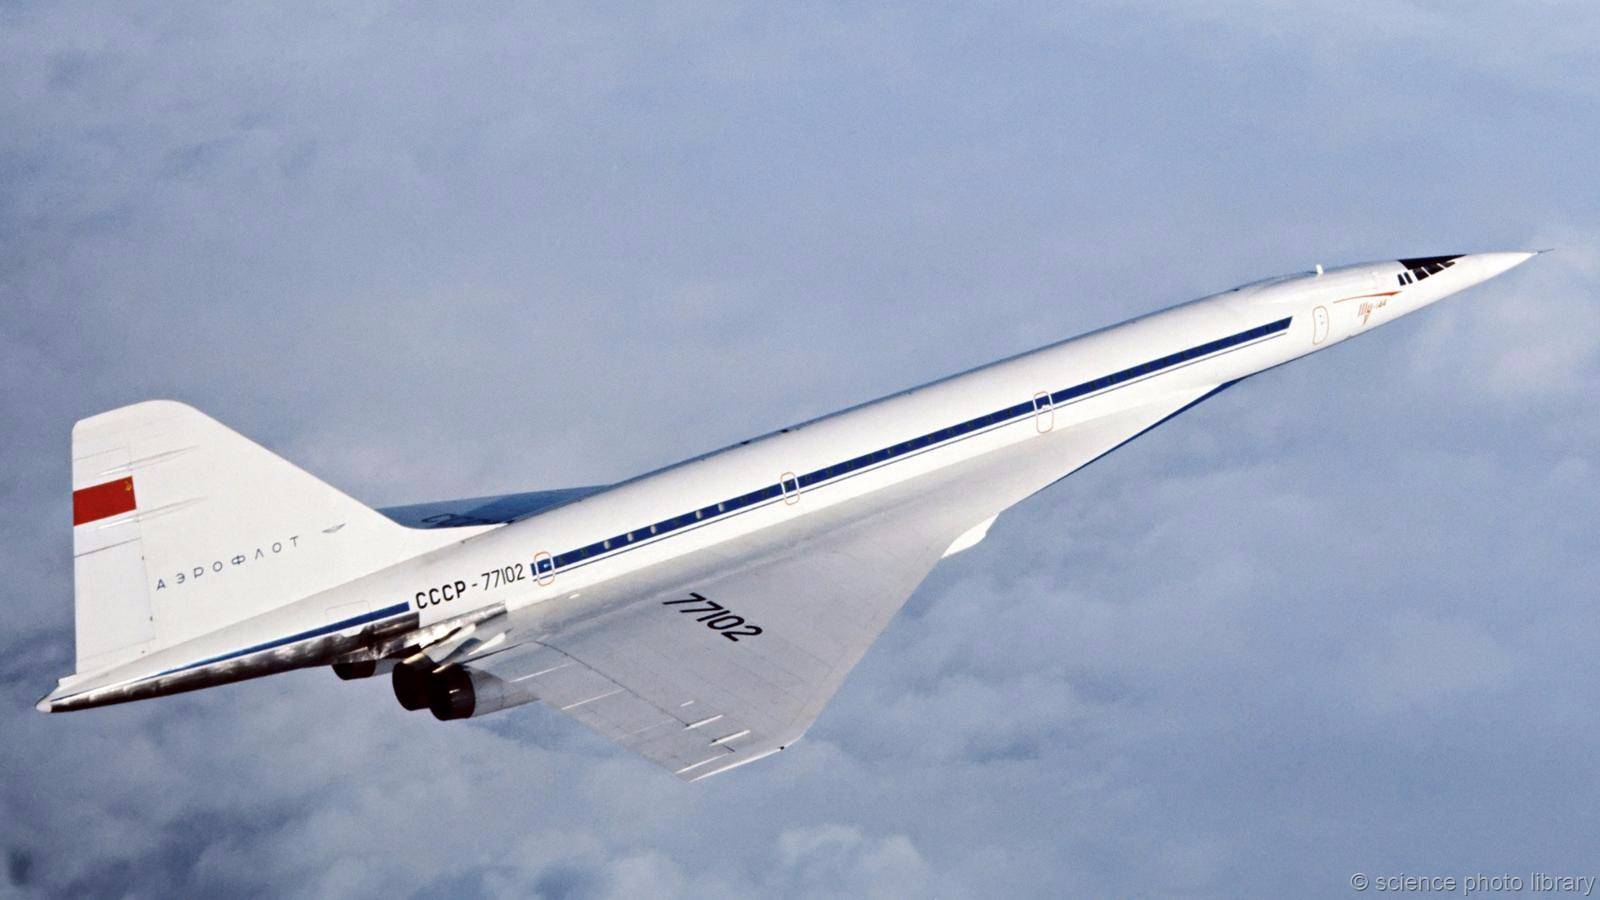 Ту-144 - первый сверхзвуковой советский самолет